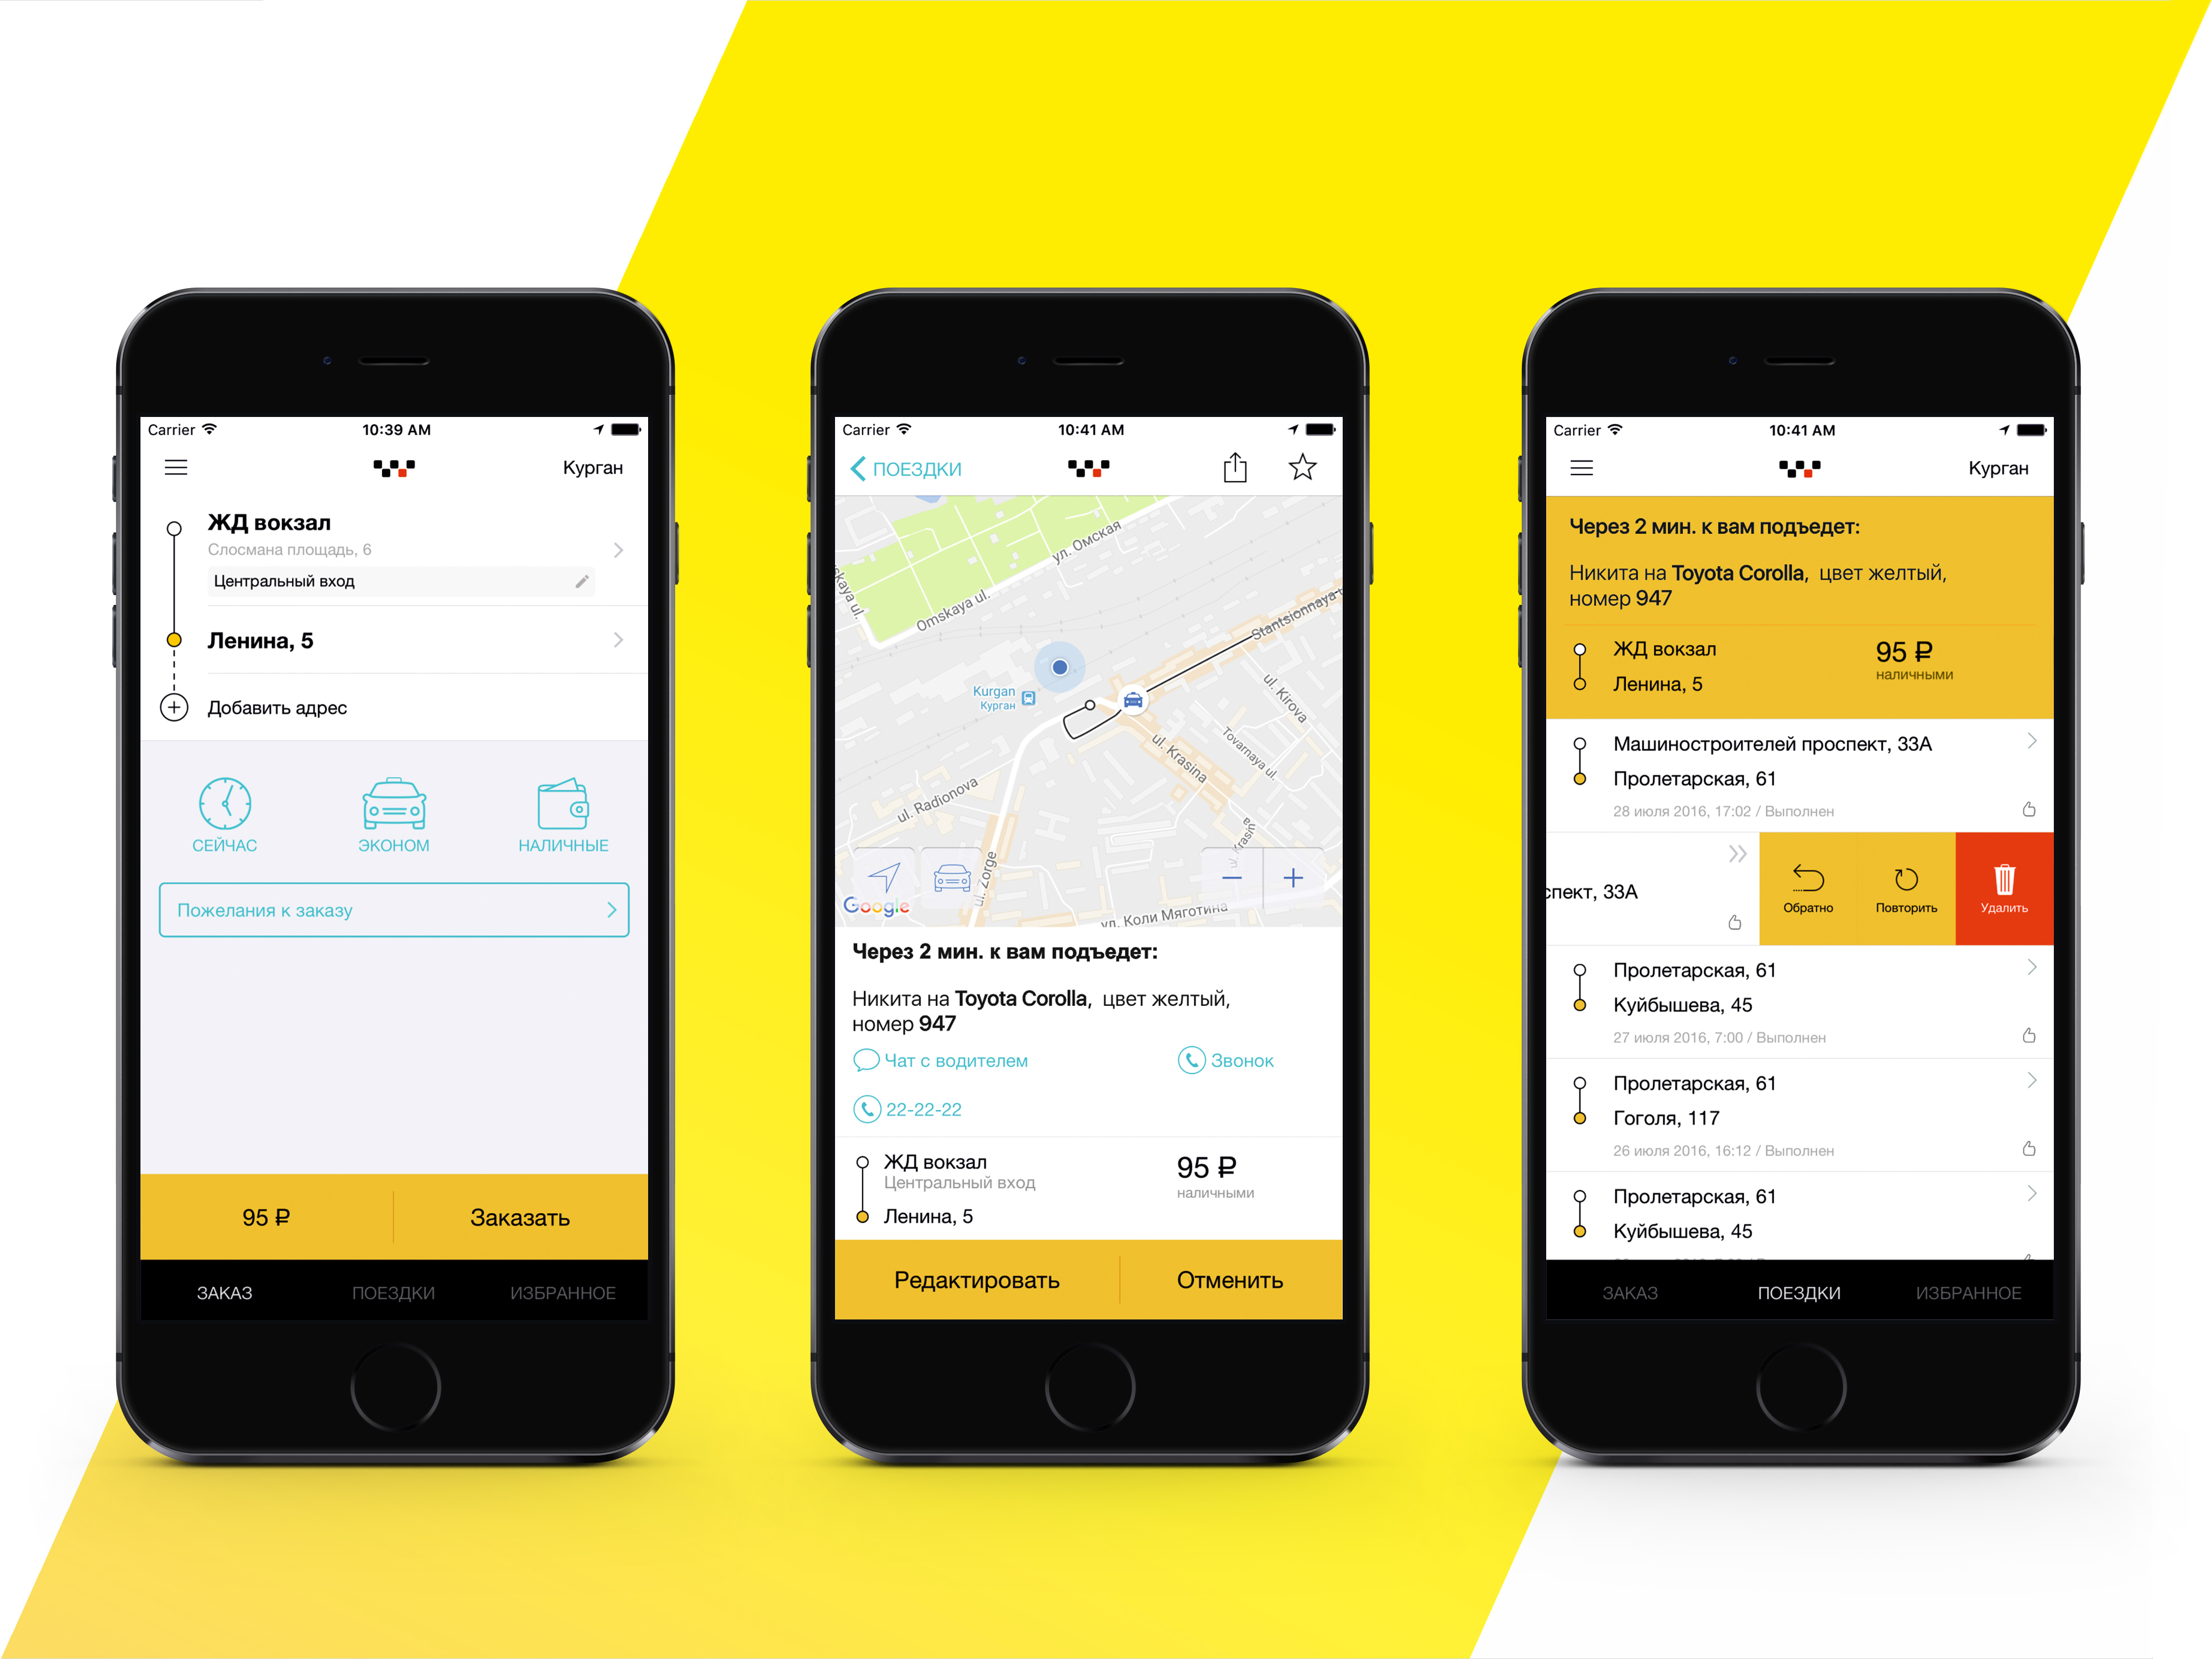 Заказать такси через телефон. Приложение такси. Мобильное приложение такси. Интерфейс приложения такси.